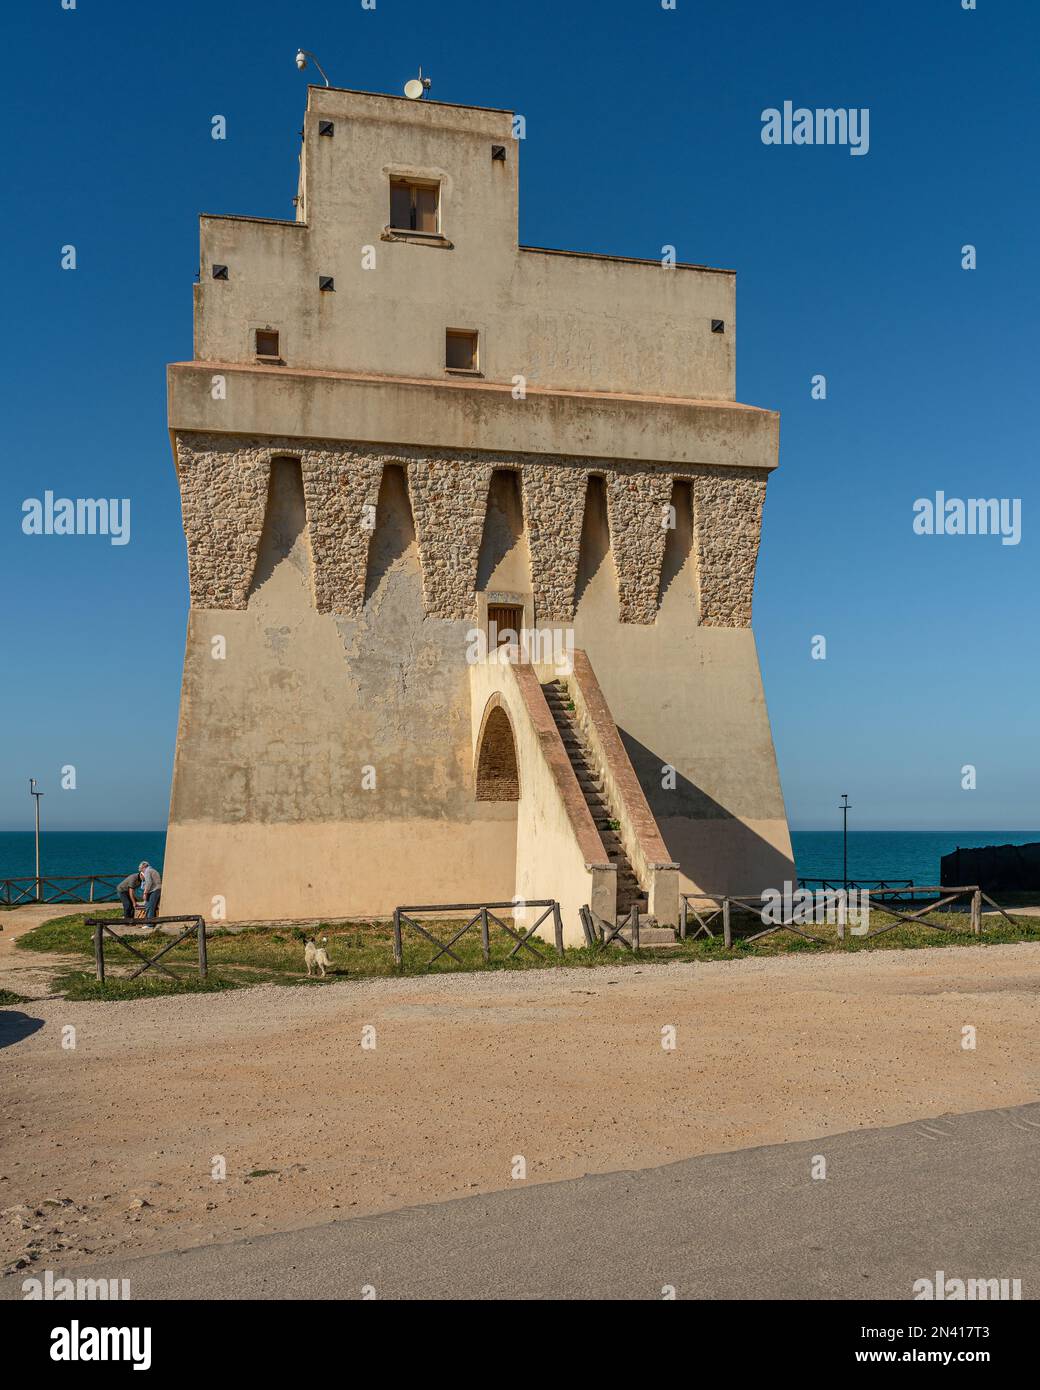 Torre Mileto ist der Sichtturm Aragonesischer Herkunft. In der Nähe des Turms befindet sich der Badeort San Nicandro Garganico. Provinz Foggia, Apulien Stockfoto